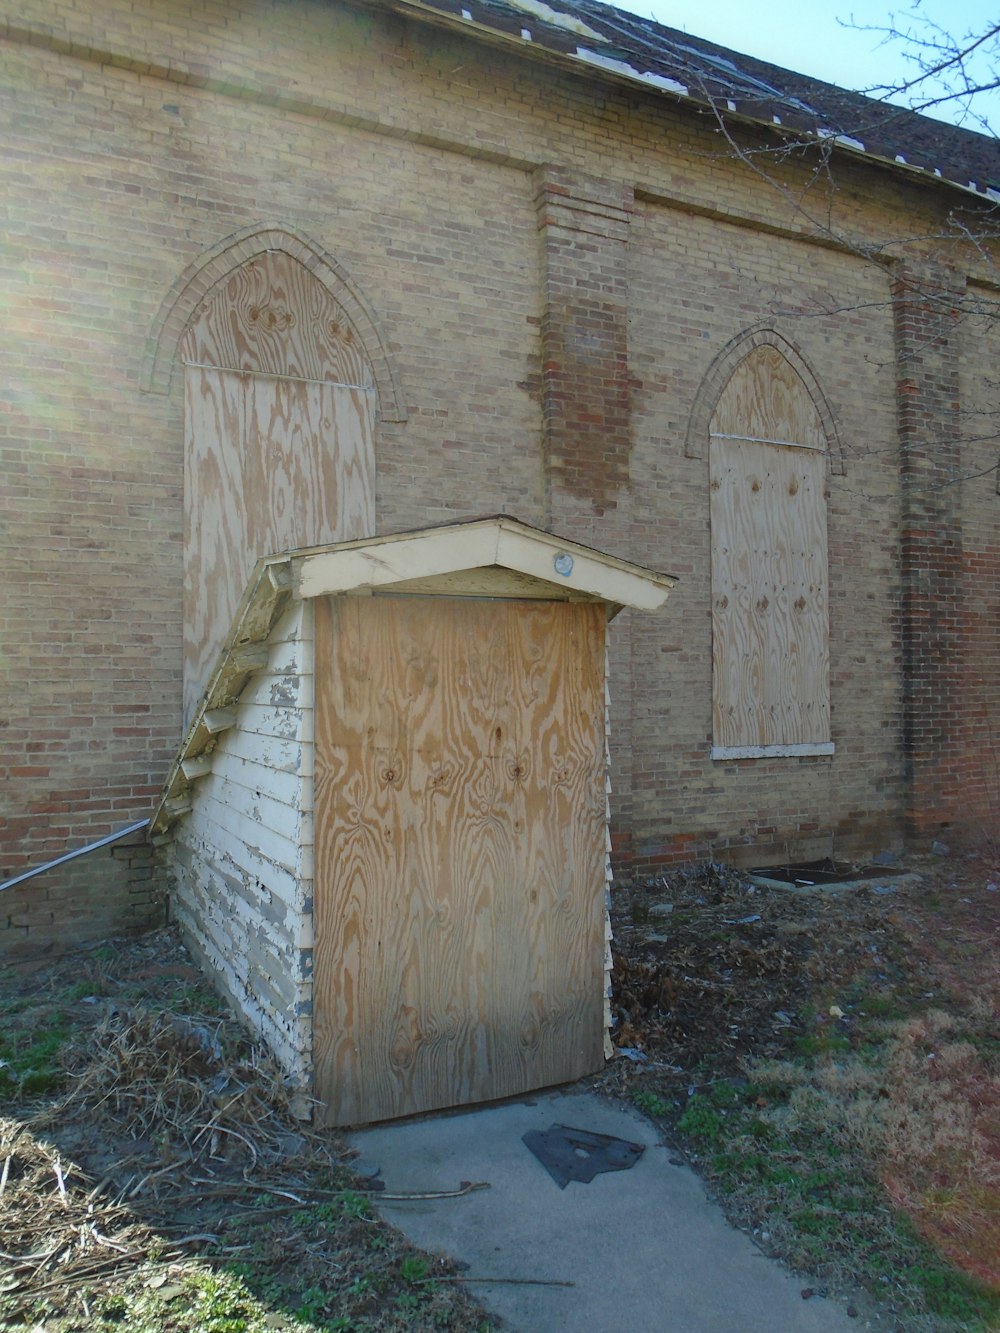 a door in a brick building